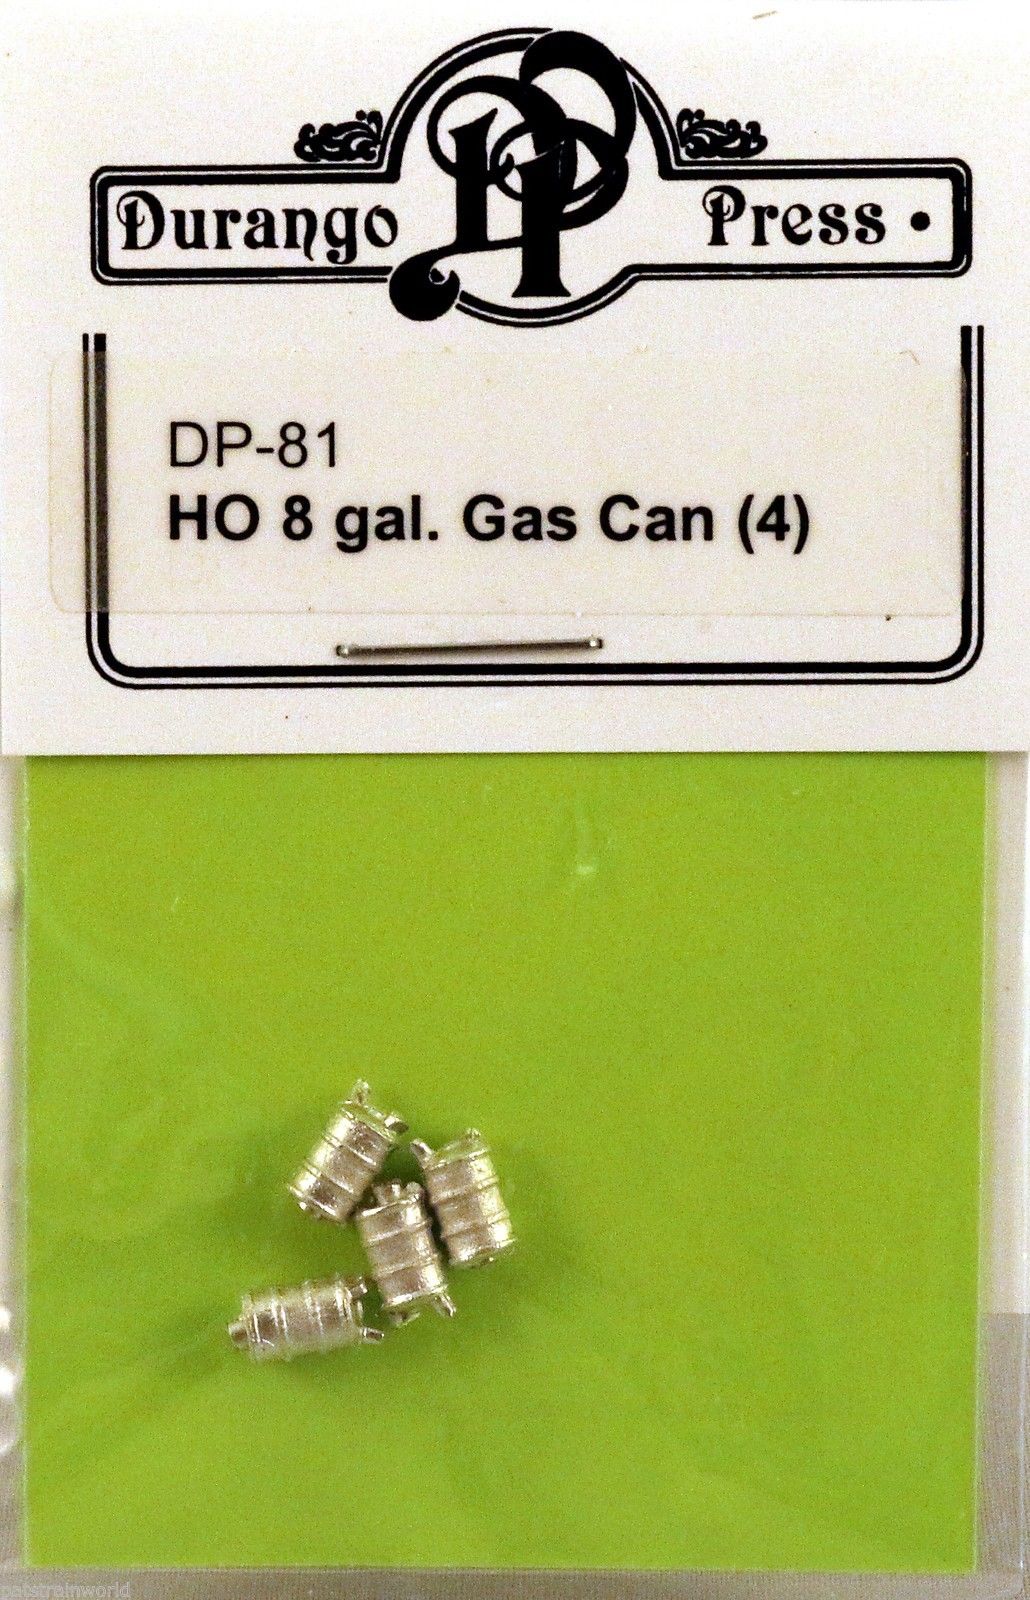 Durango Press 81 Ho 8 Gallon Gas Can (4)